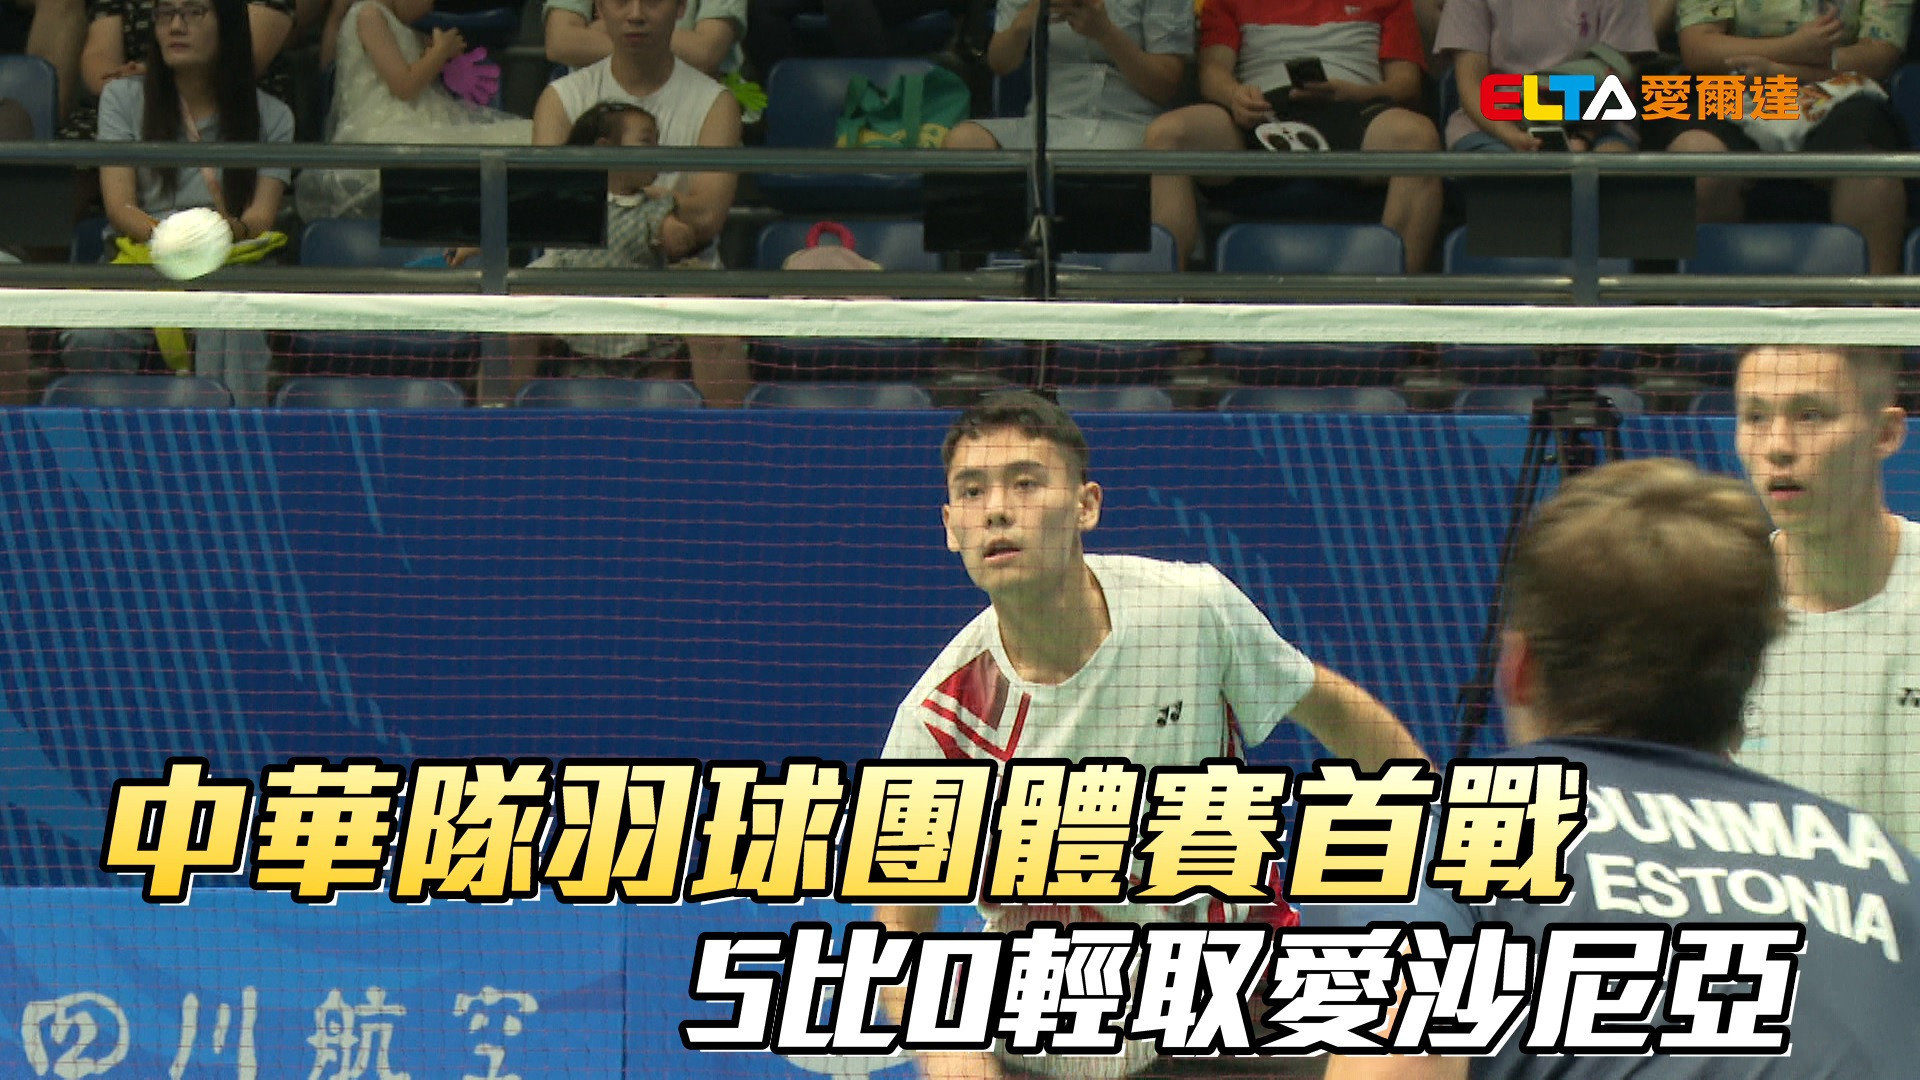 07/30 中華隊羽球團體賽首戰 5比0輕取愛沙尼亞